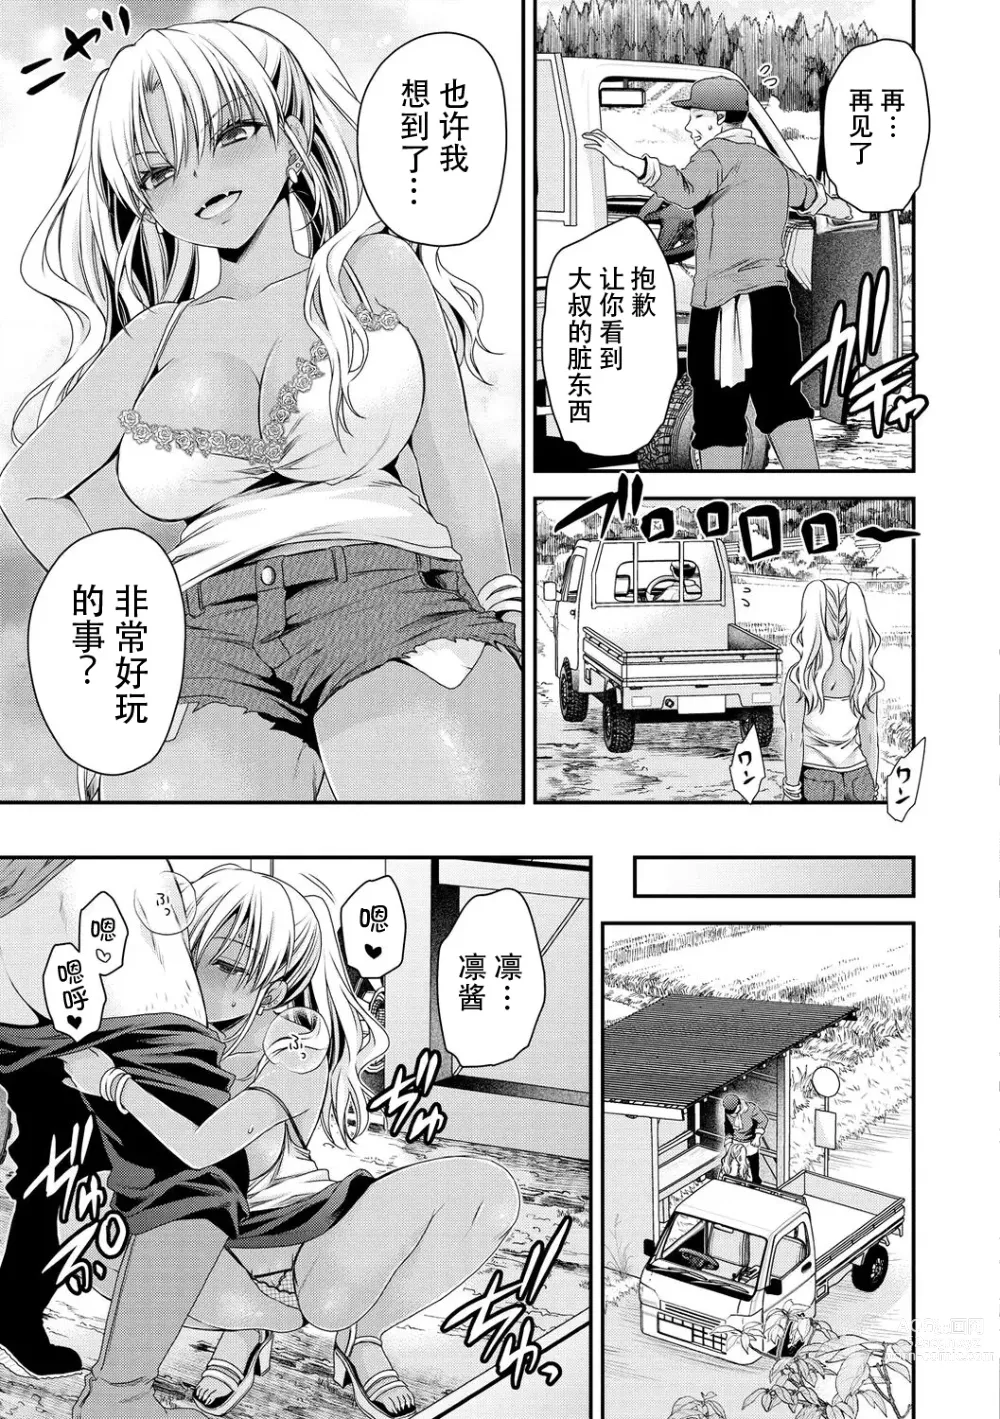 Page 3 of manga Inaka ni Bitch ga Yattekita! + Inaka ni Bitch ga Yattekita! Returns {Watashi No Tondemo Shotaiken)